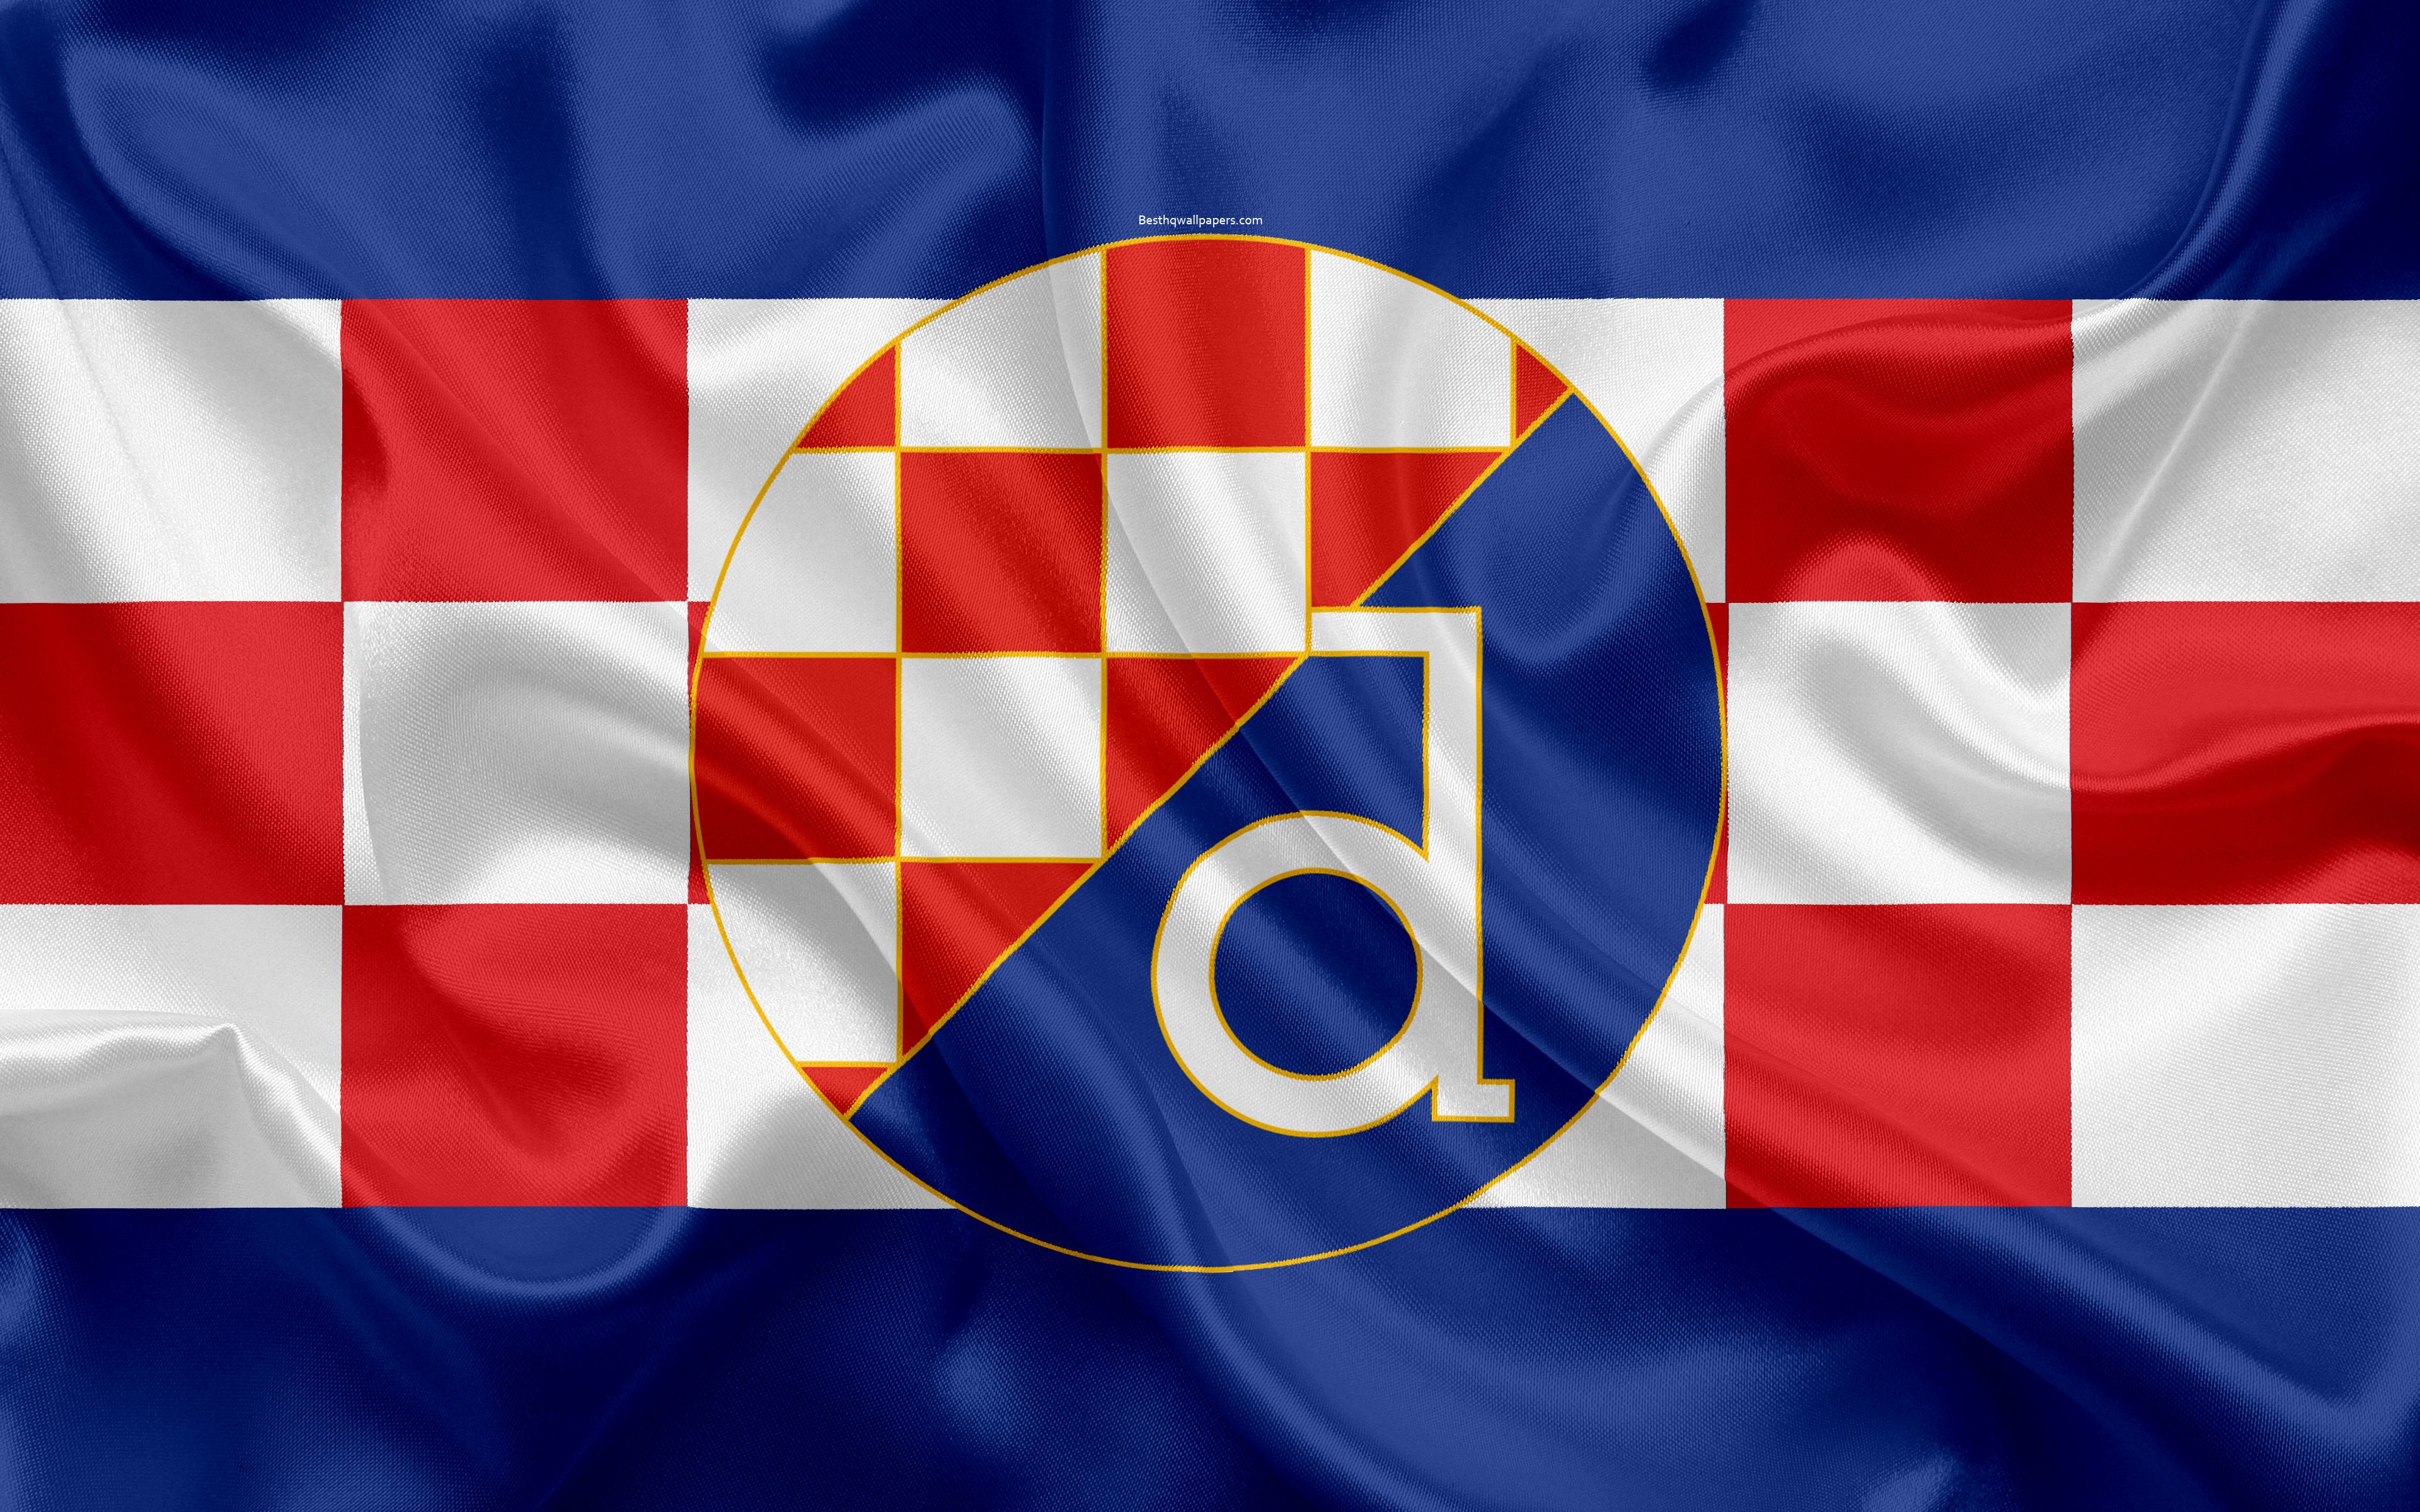 پرچم کرواسی (flag of Croatia)